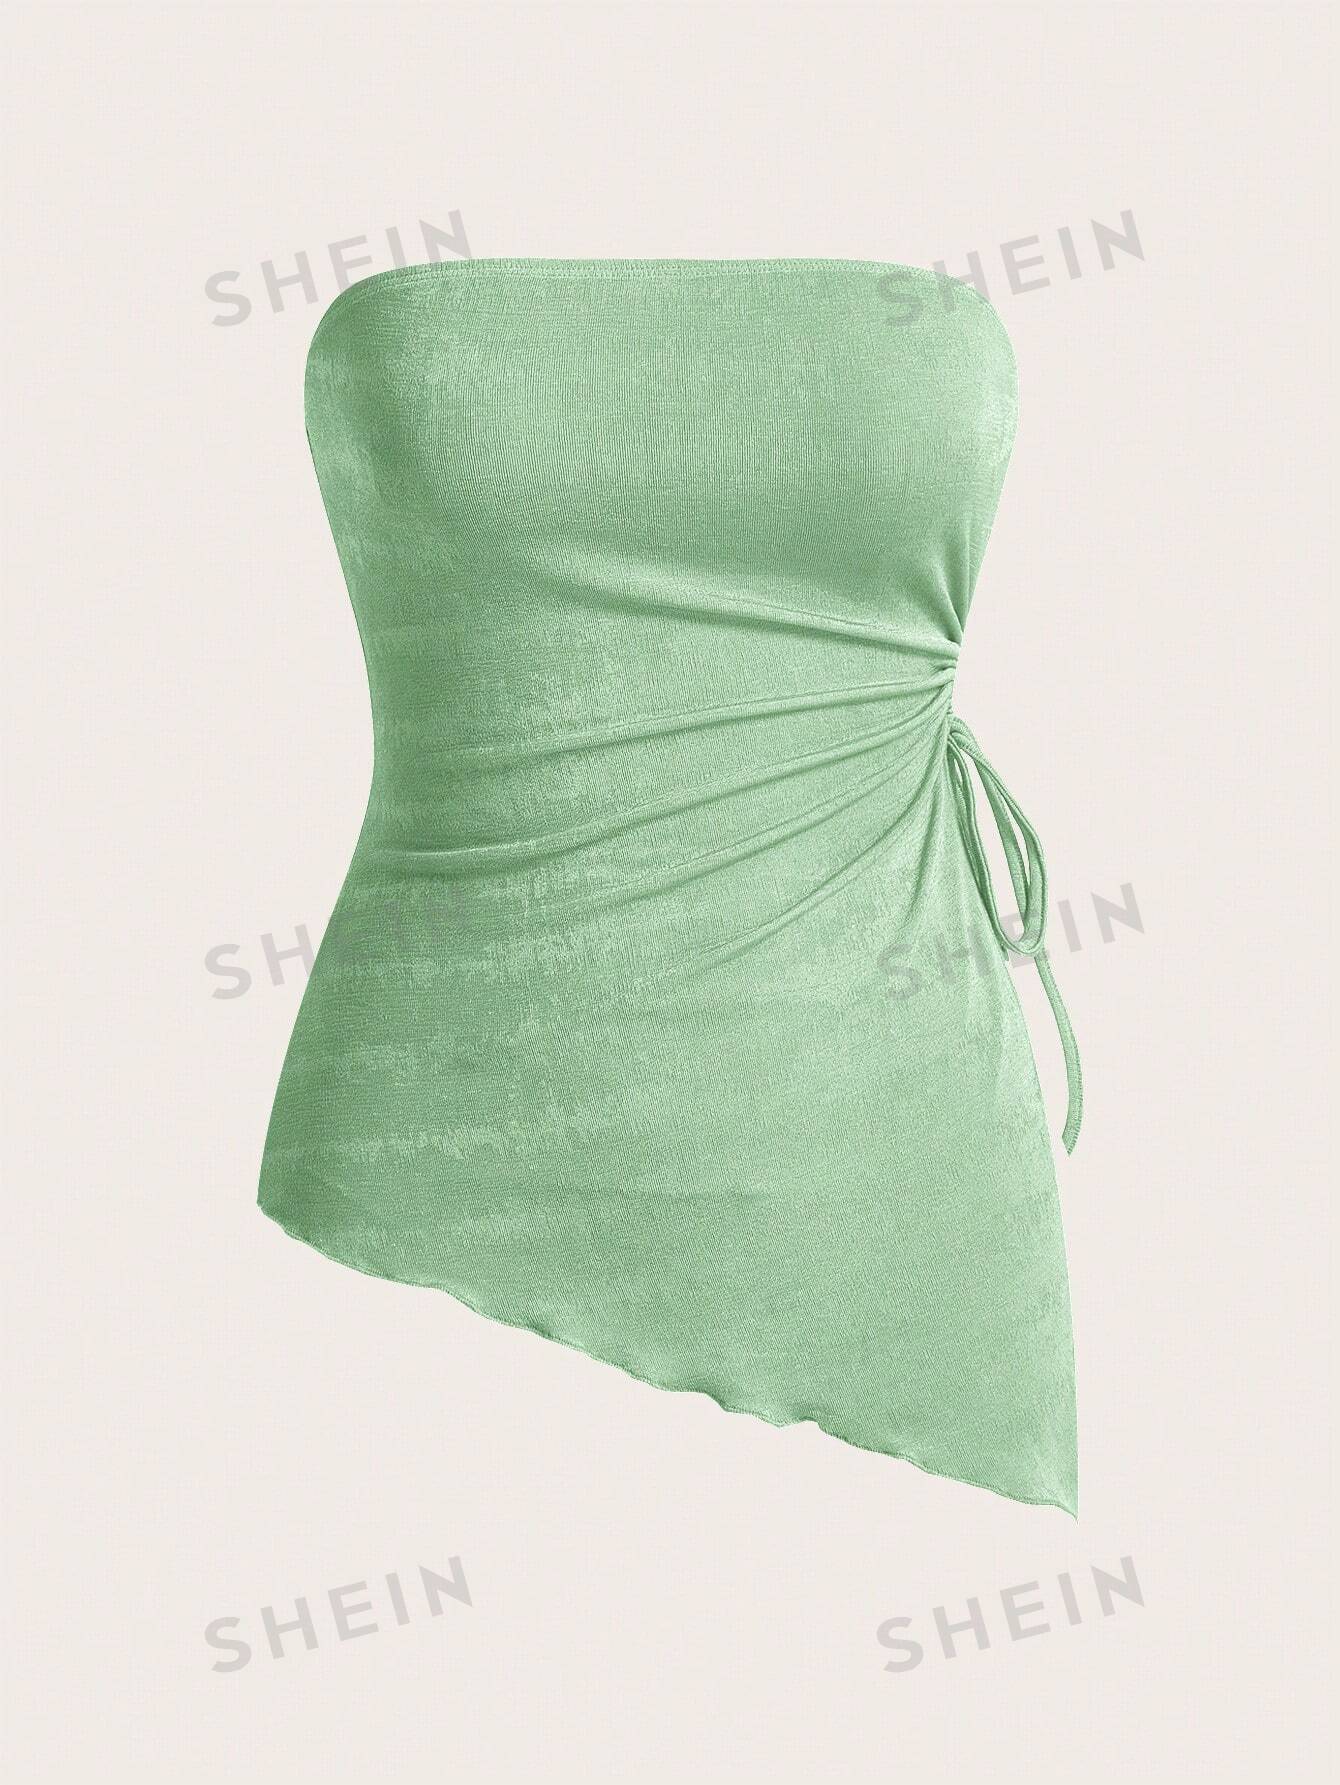 shein mod вязаный женский асимметричный топ бандо с завязками по бокам и неровным подолом розовый SHEIN MOD Вязаный женский асимметричный топ-бандо с завязками по бокам и неровным подолом, мятно-зеленый